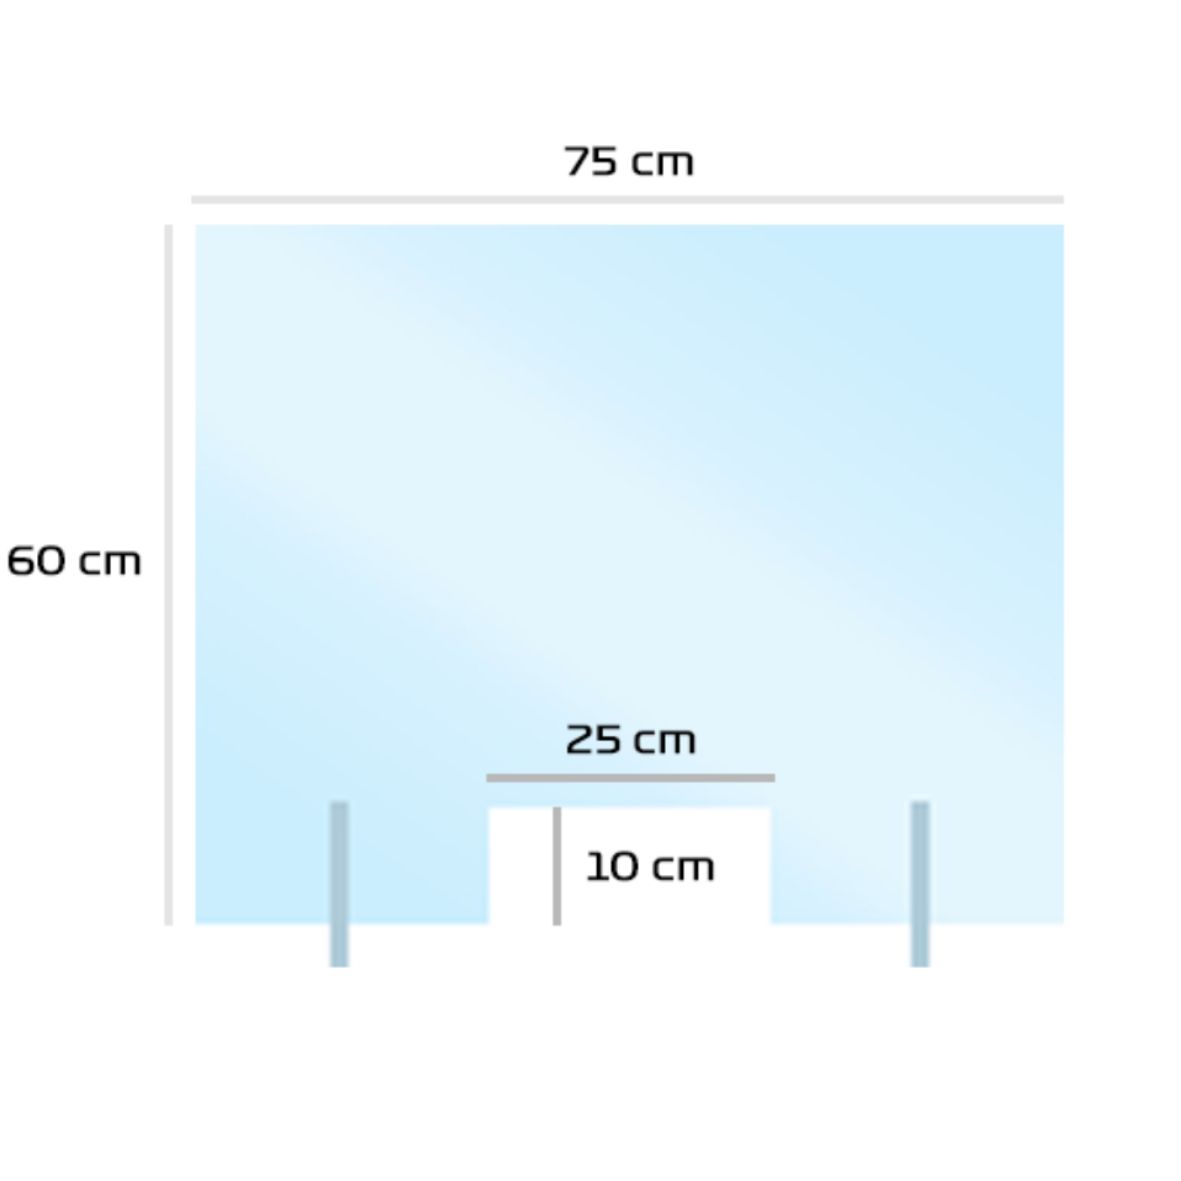 Mampara de protección de metacrilato transparente estandar ya fabricada de medida 50cm x 75cm especial mostradores